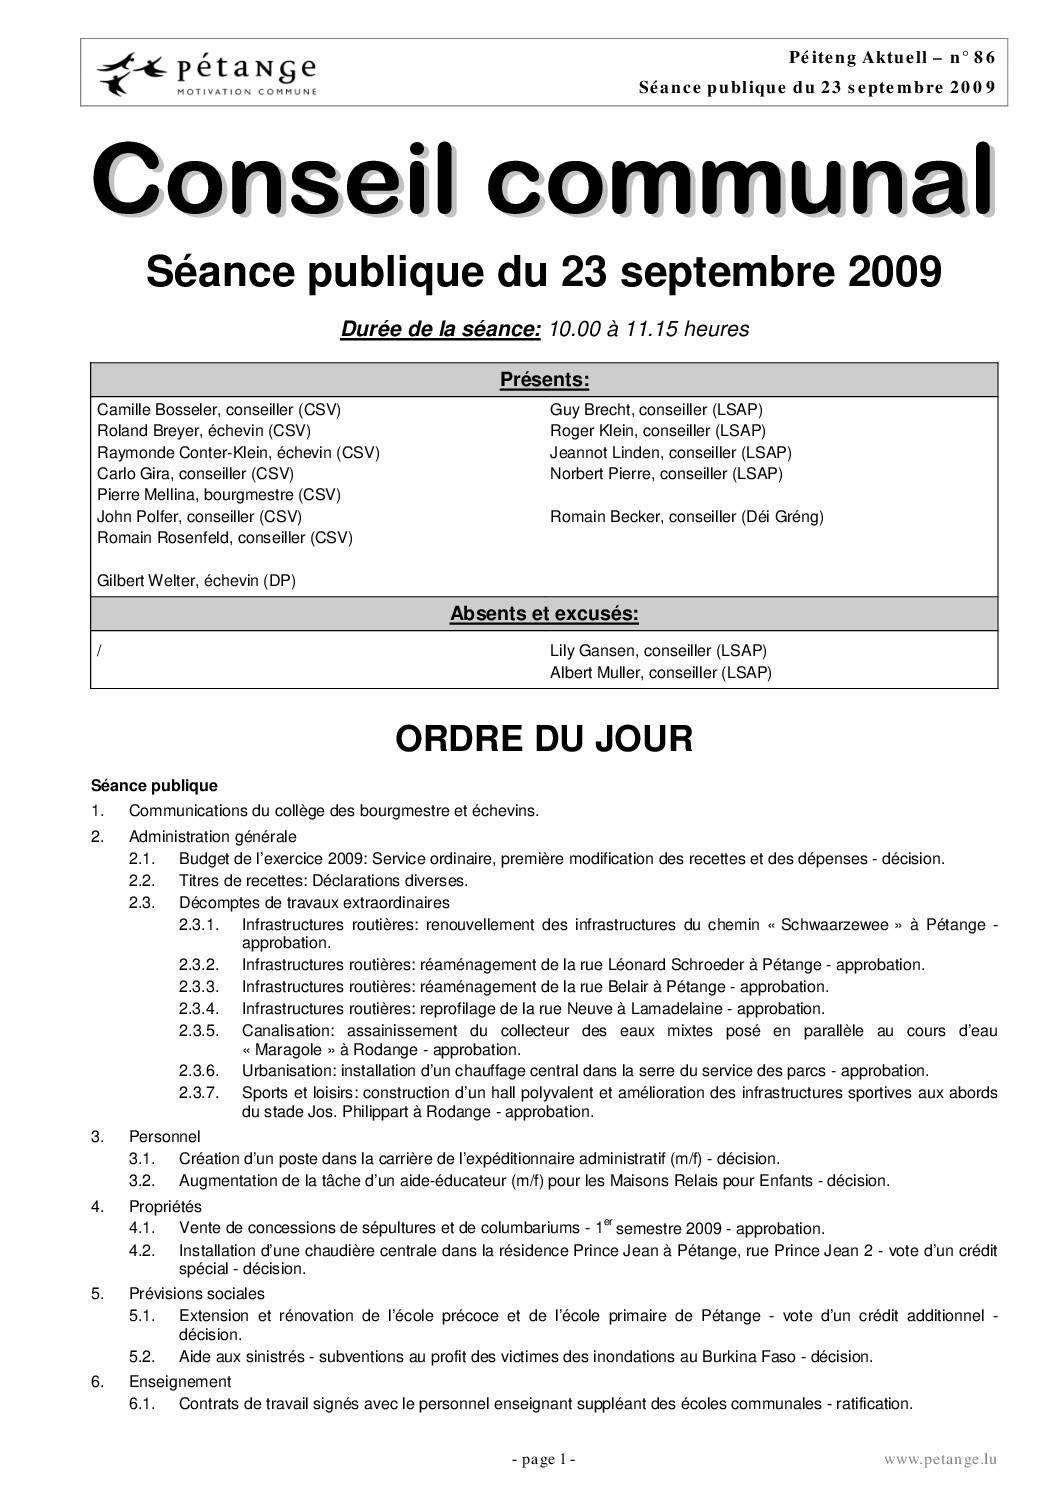 Rapport des séances du conseil communal du 23.09.2009; 20.10.2009 et 09.11.2009